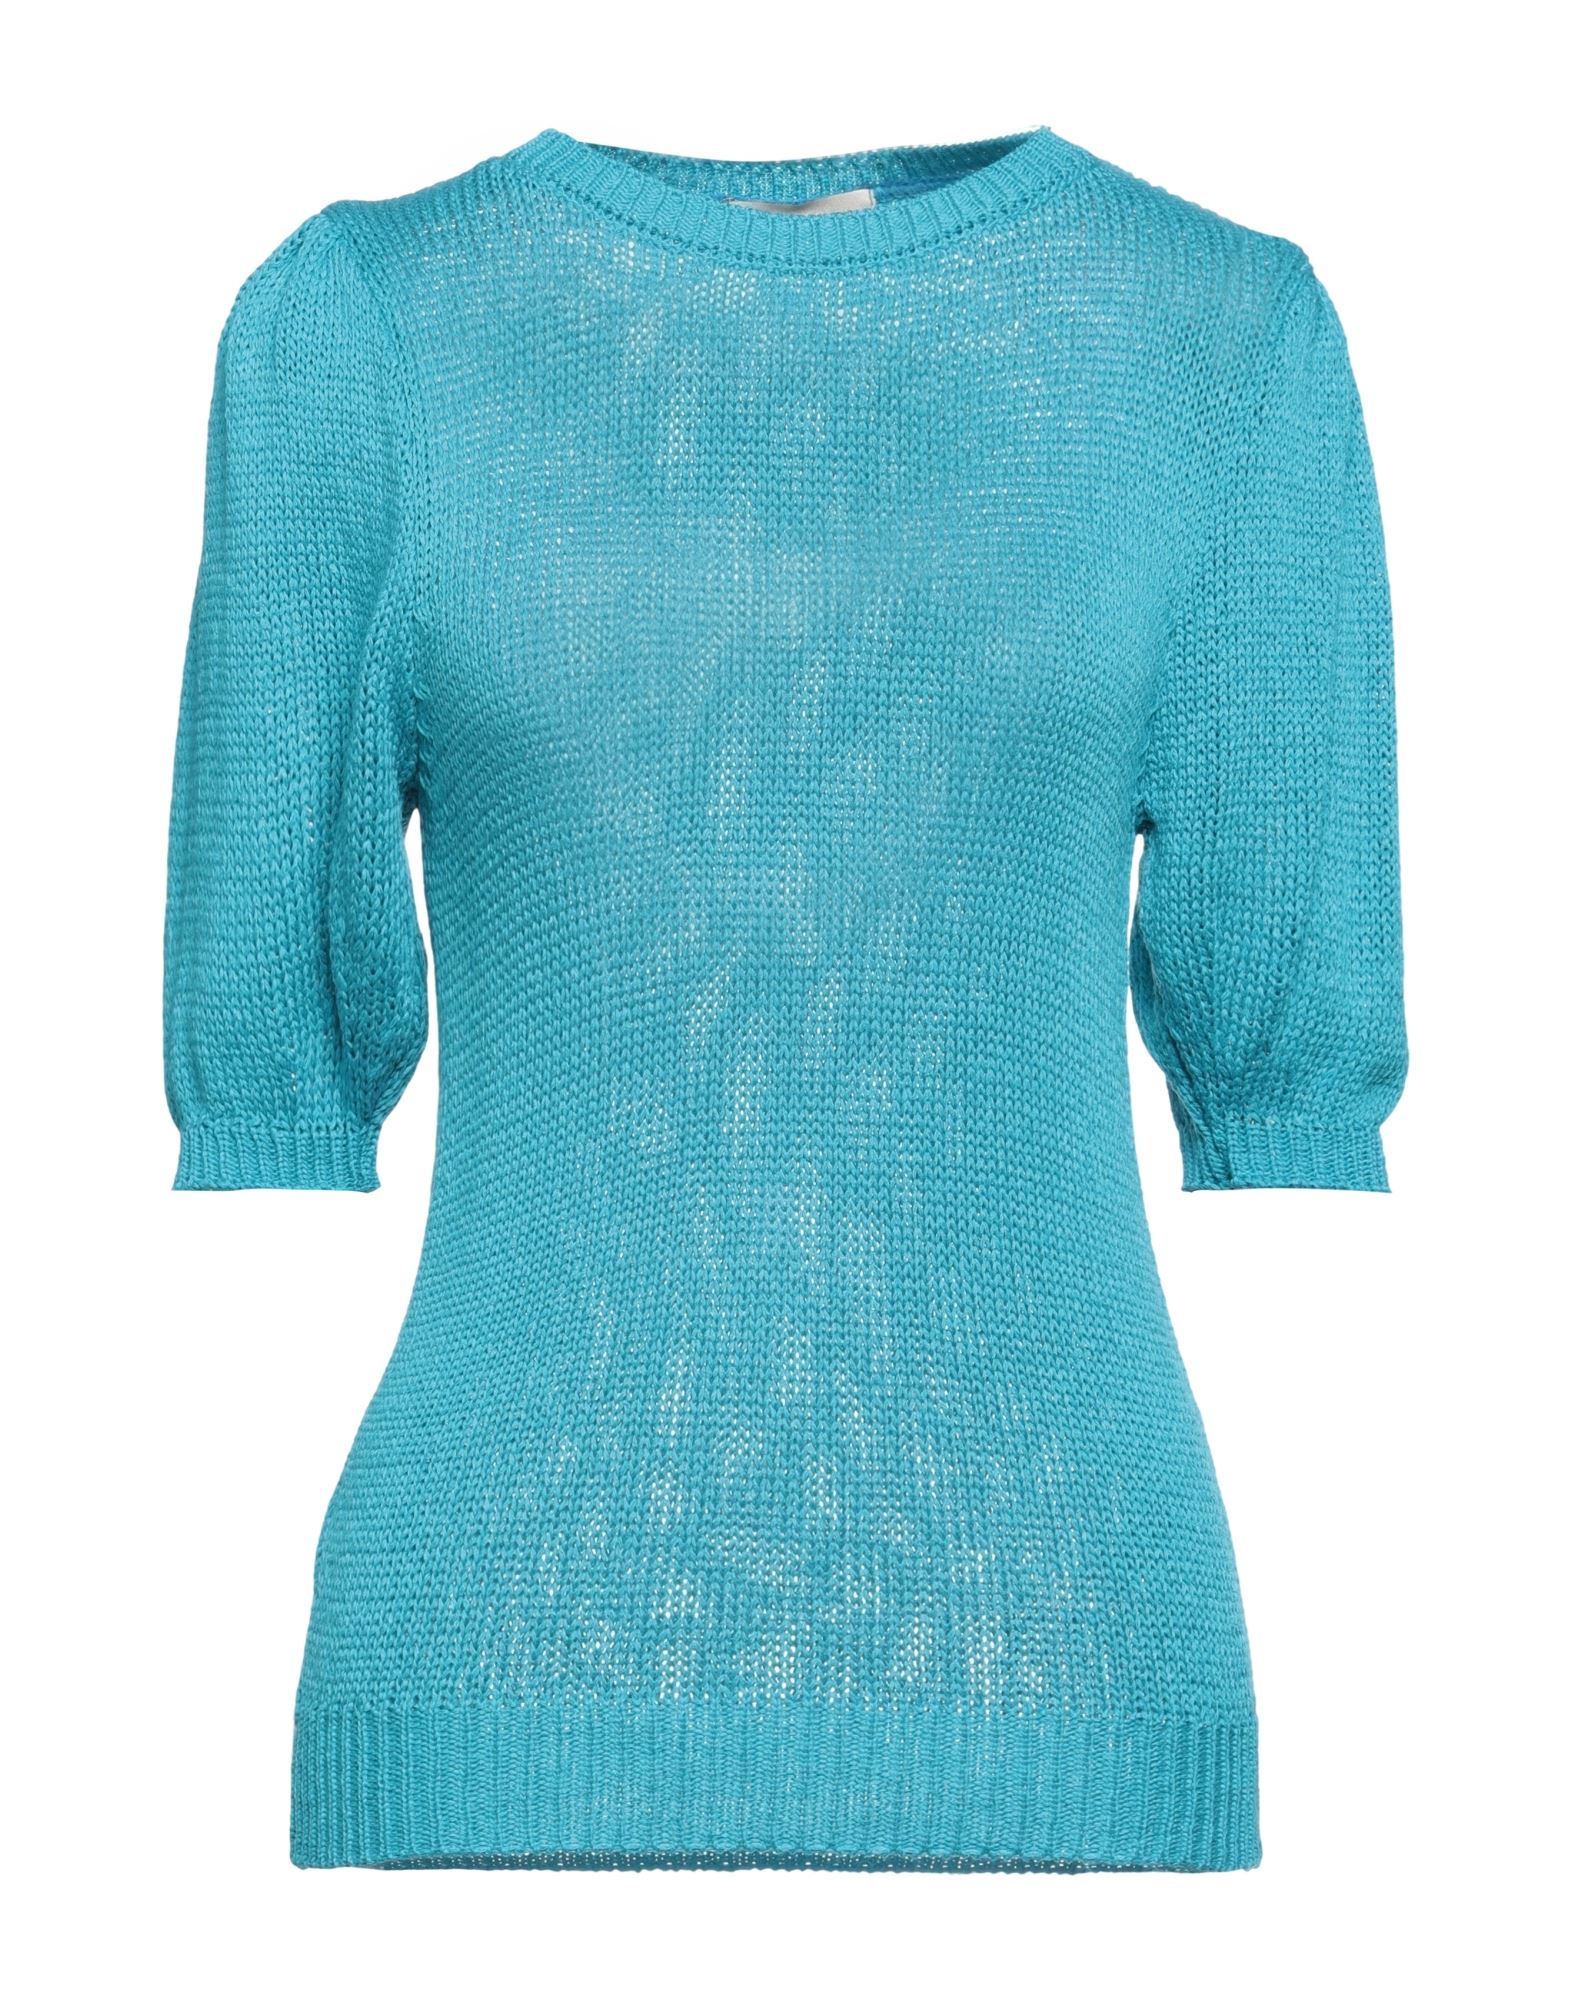 Antonello Serio Sweaters In Blue